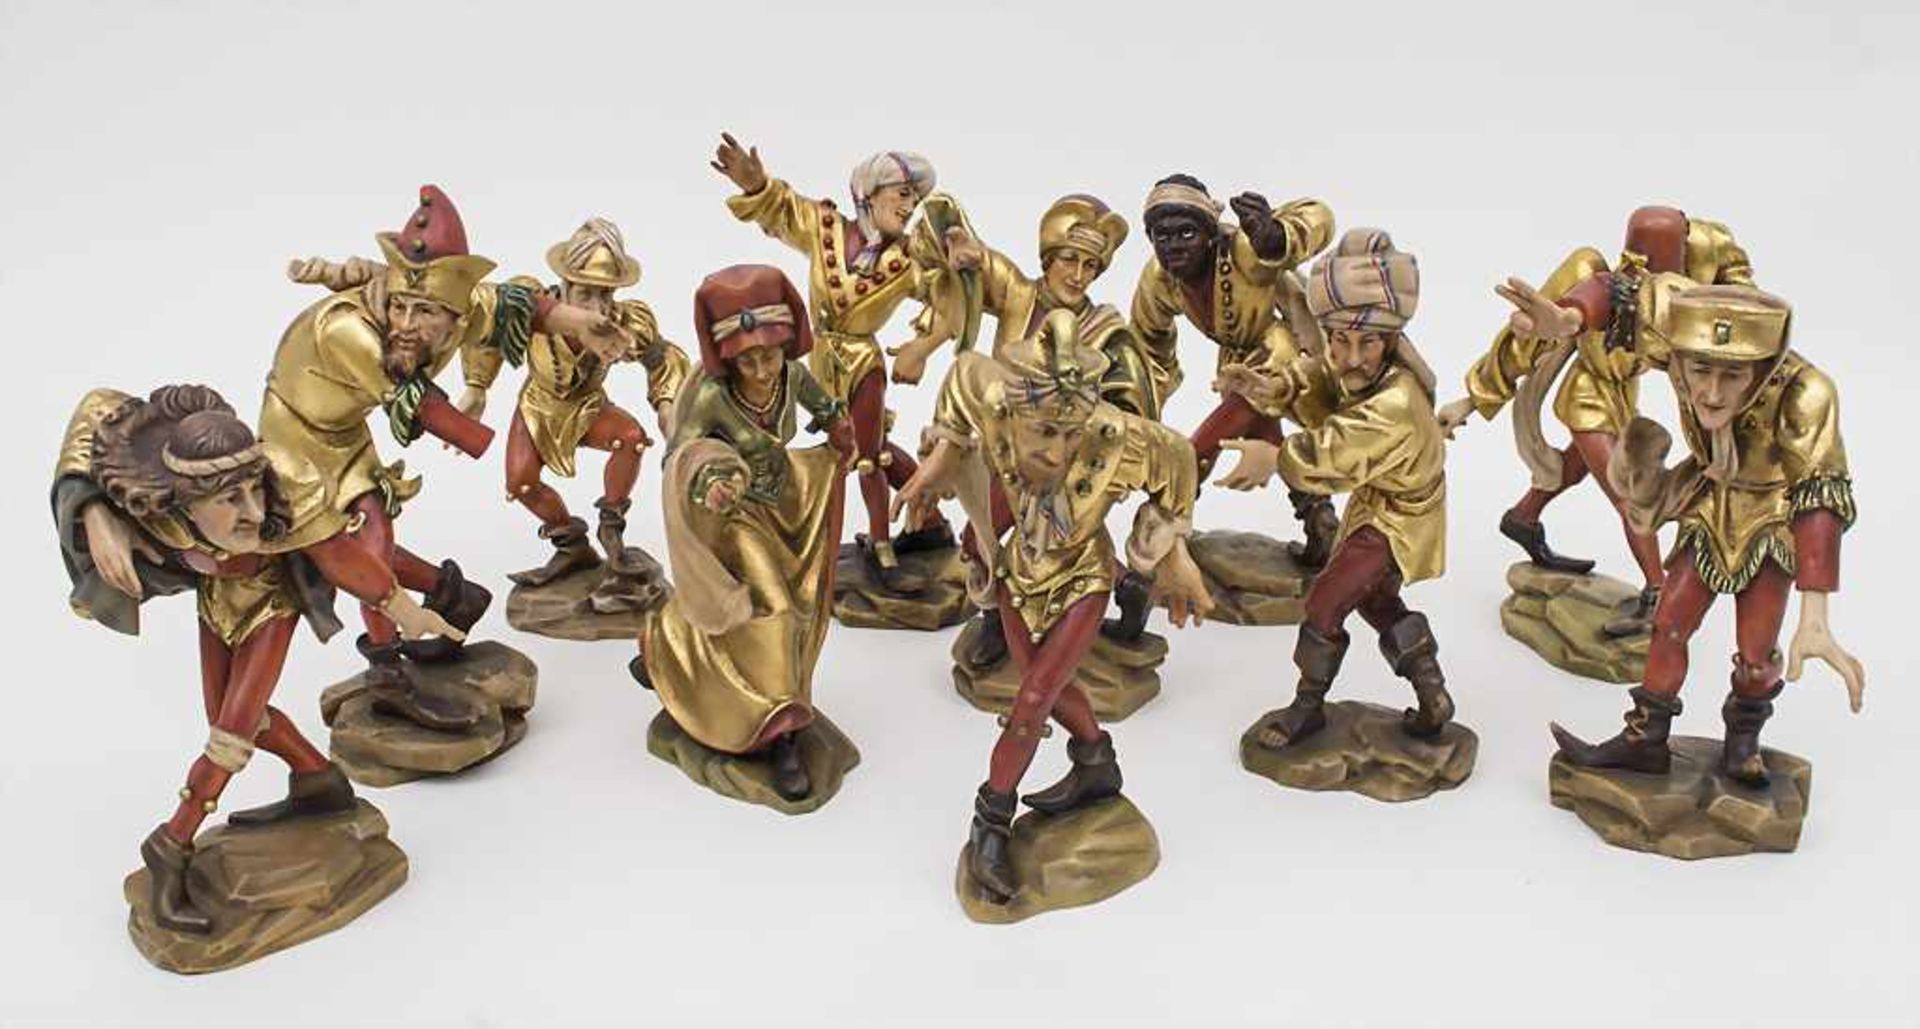 Lot 11 Holzfiguren Morisken-Tänzer / Wooden figurines morris dancers, Bozen Südtirol, 2. Hälfte